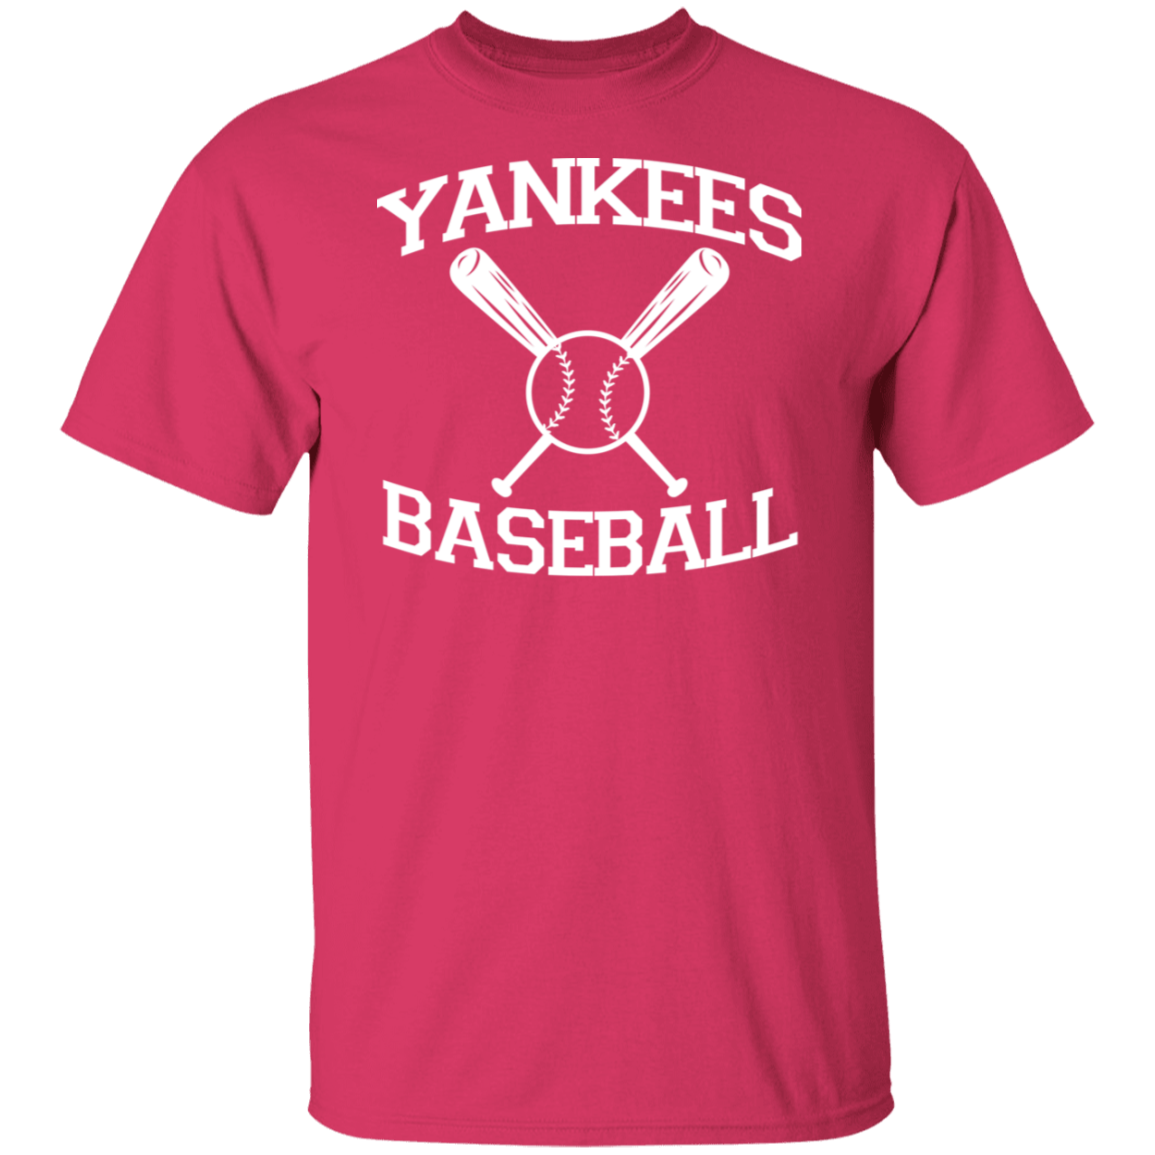 Yankees Baseball White Print T-Shirt